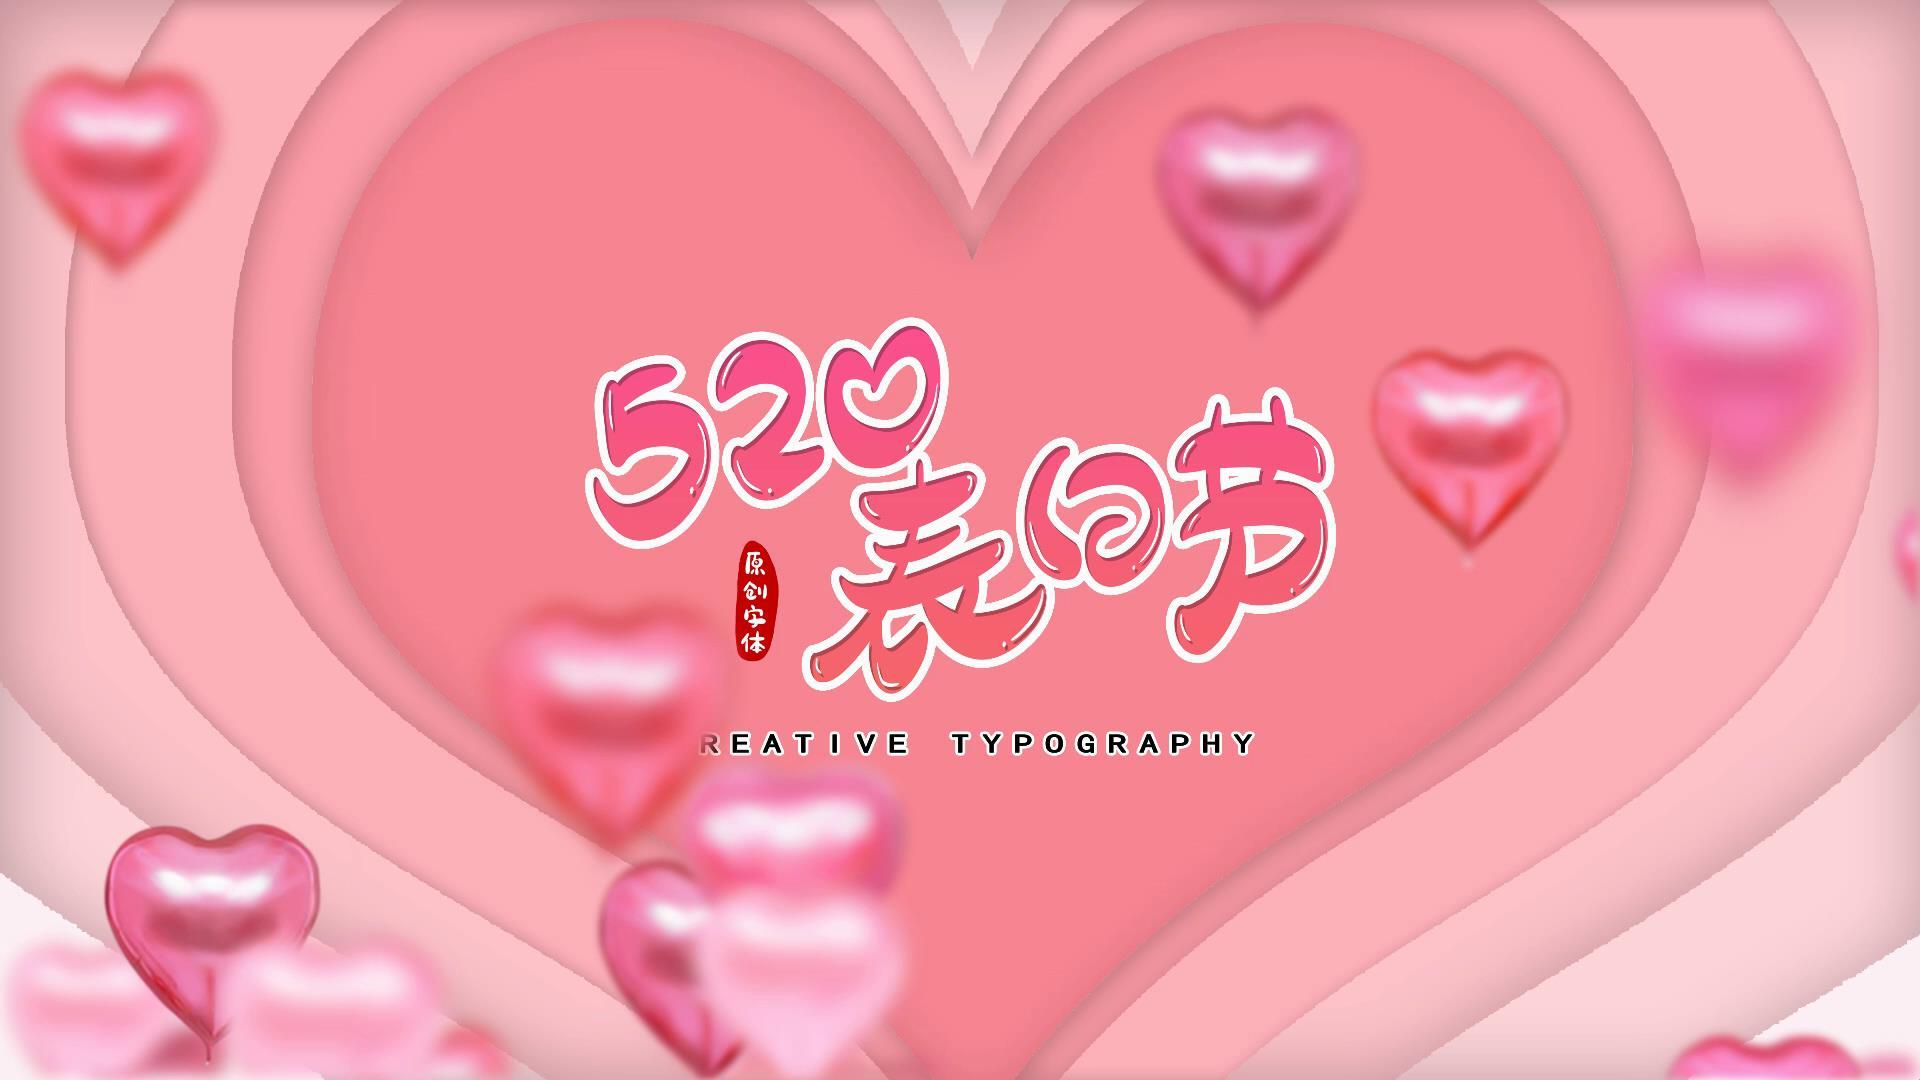 浪漫温馨图文爱情520情侣相册视频的预览图